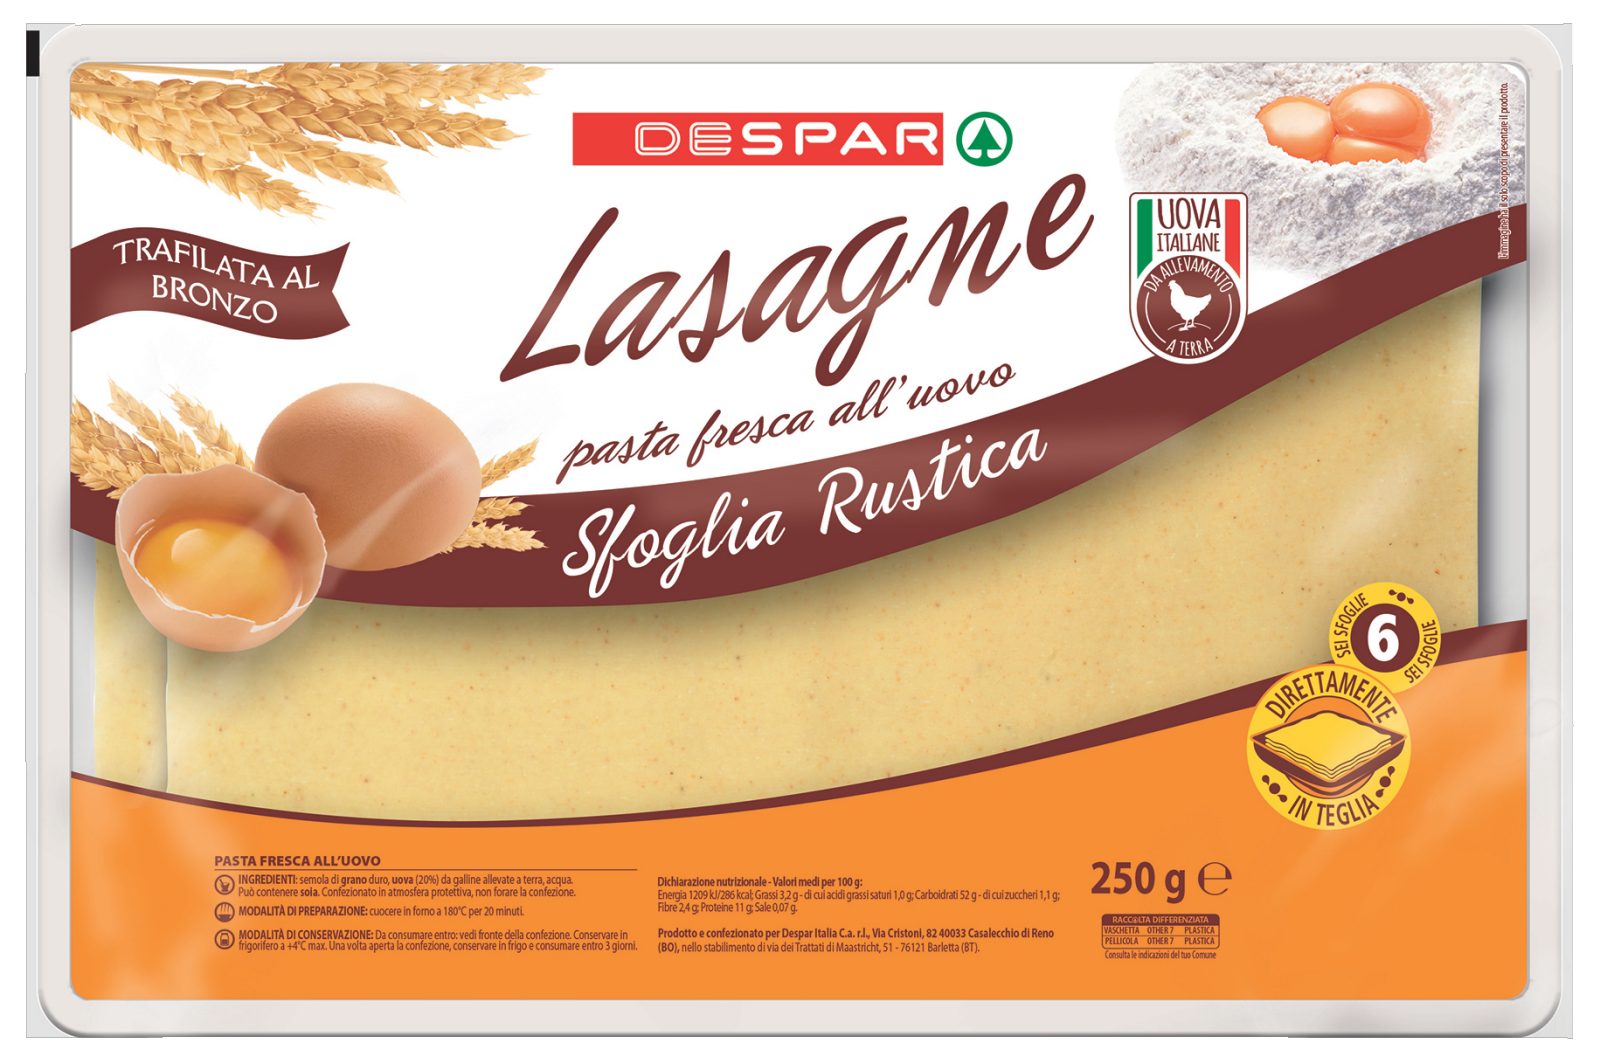 Sfoglia rustica per lasagne